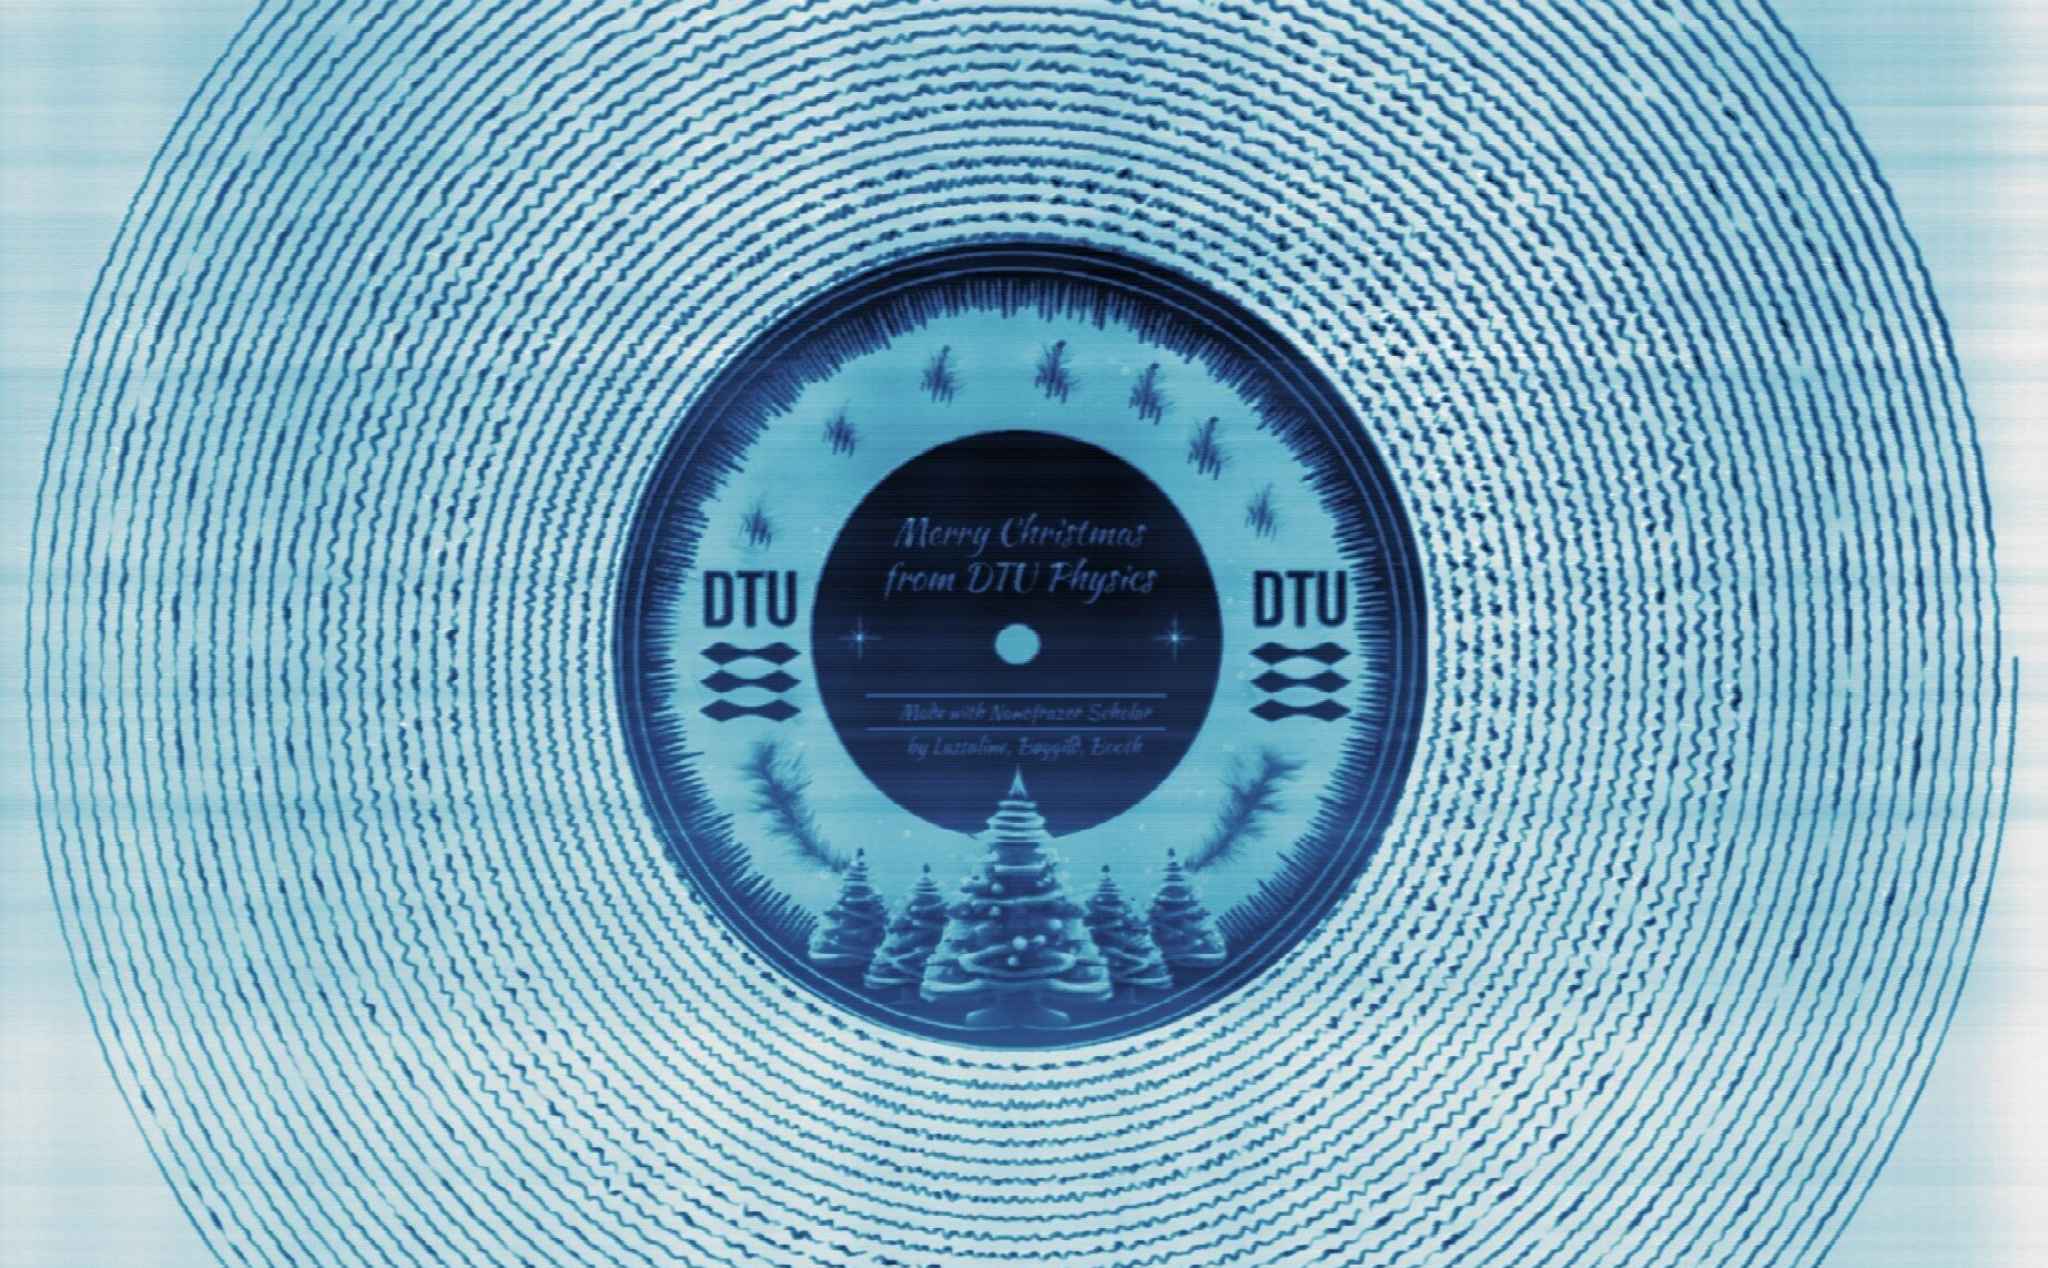 Chiếc đĩa "vinyl" đường kính chỉ 40 µm chứa 25 giây bài hát Rocking Around the Christmas Tree